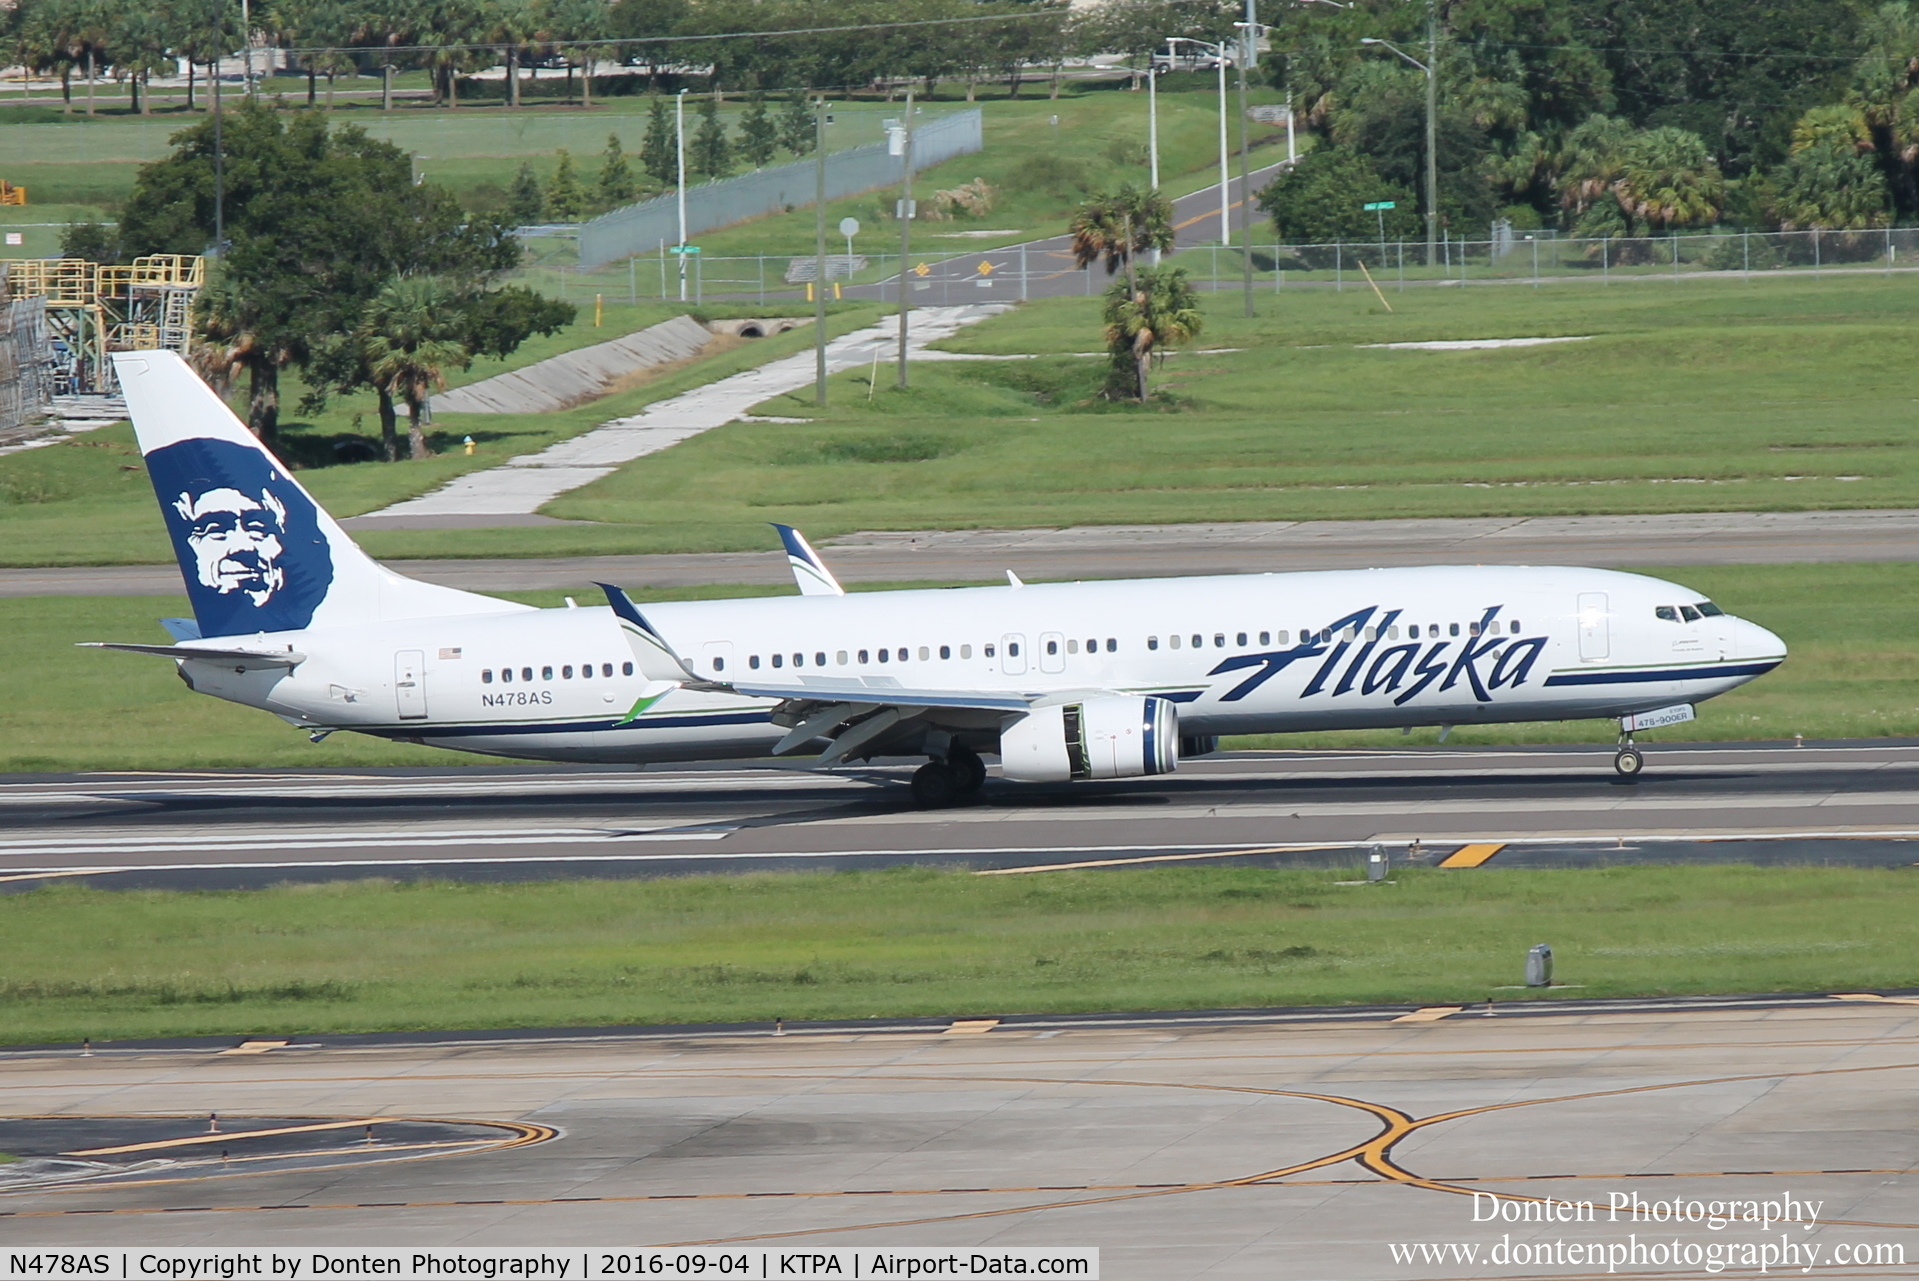 N478AS, 2015 Boeing 737-990/ER C/N 44105, Alaska Flight 770 (N478AS) arrives at Tampa International Airport following flight from Seattle-Tacoma International Airport